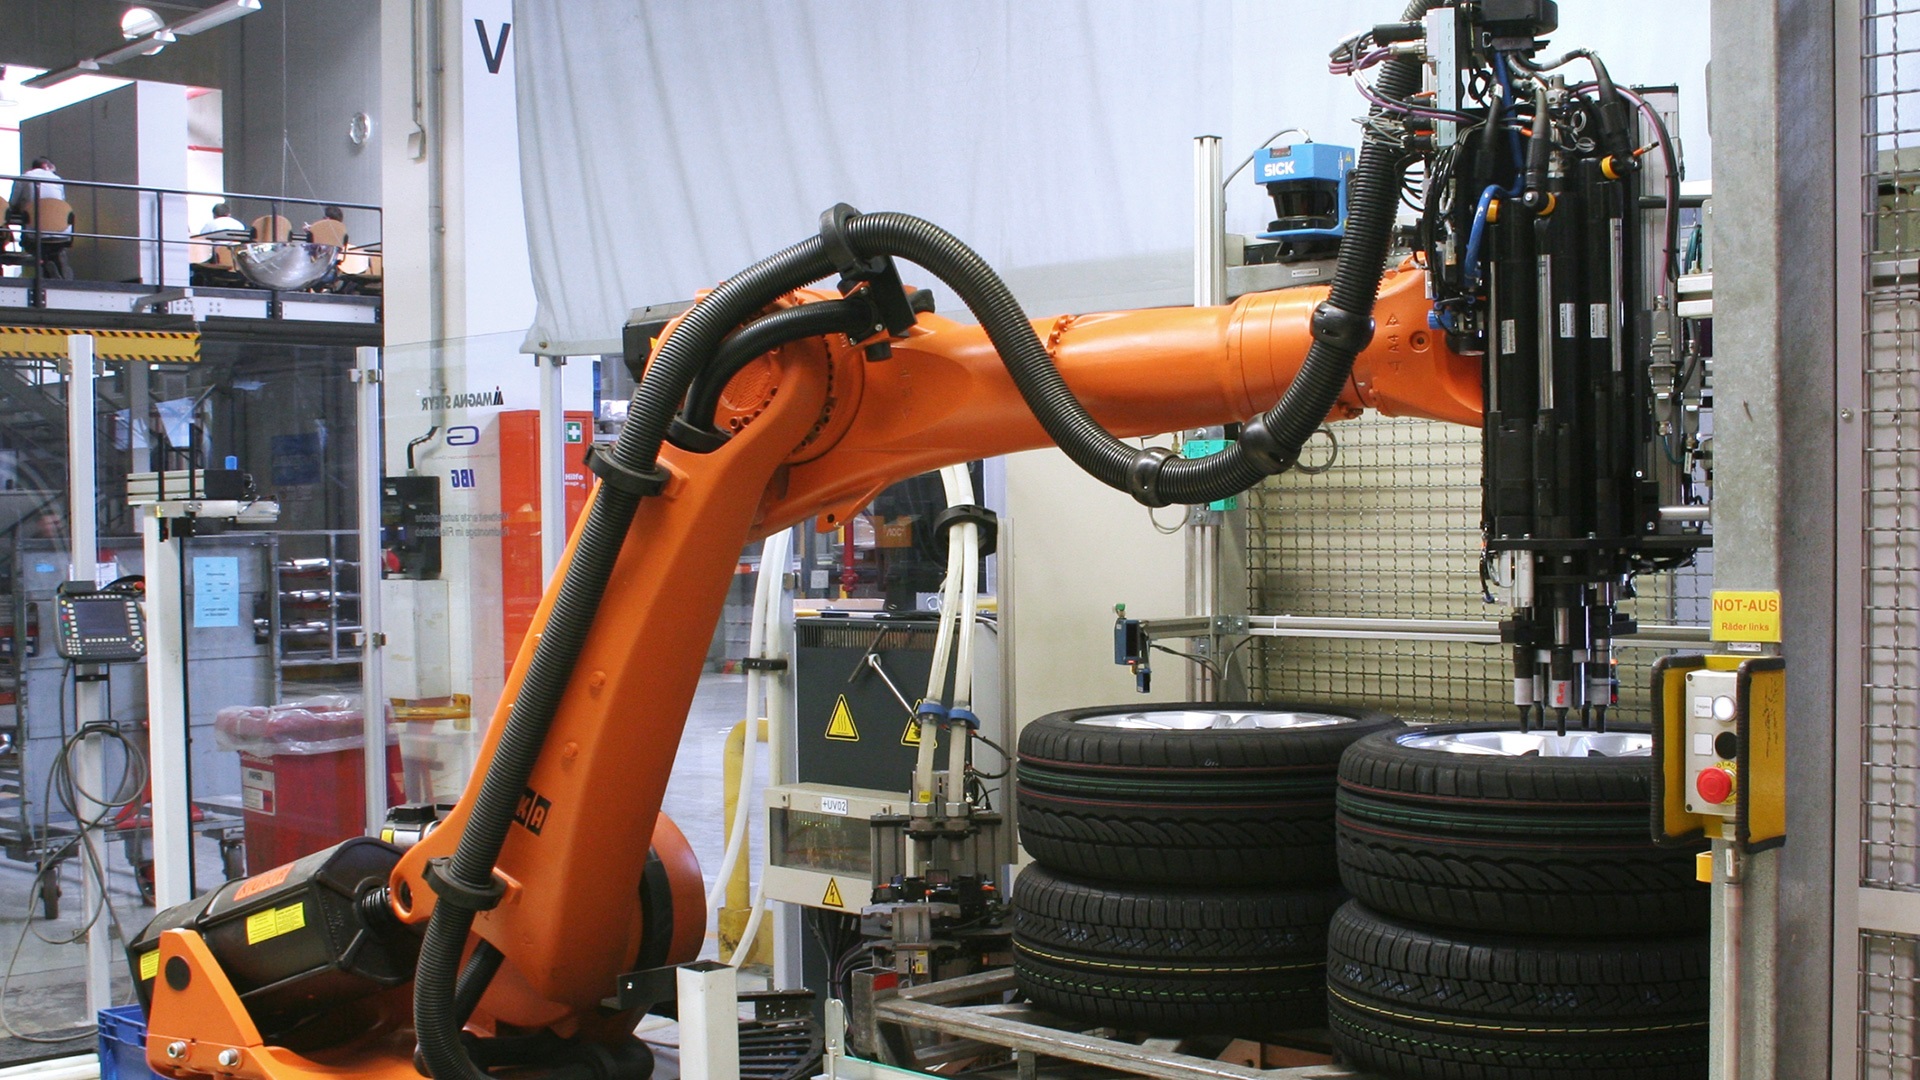 車輪胎對位 車輪胎尺寸量測 車輪胎組裝 零件對位 零件尺寸量測 零件組裝 汽車組裝 汽車檢測 機器人組裝 自動化檢測 自動化組裝